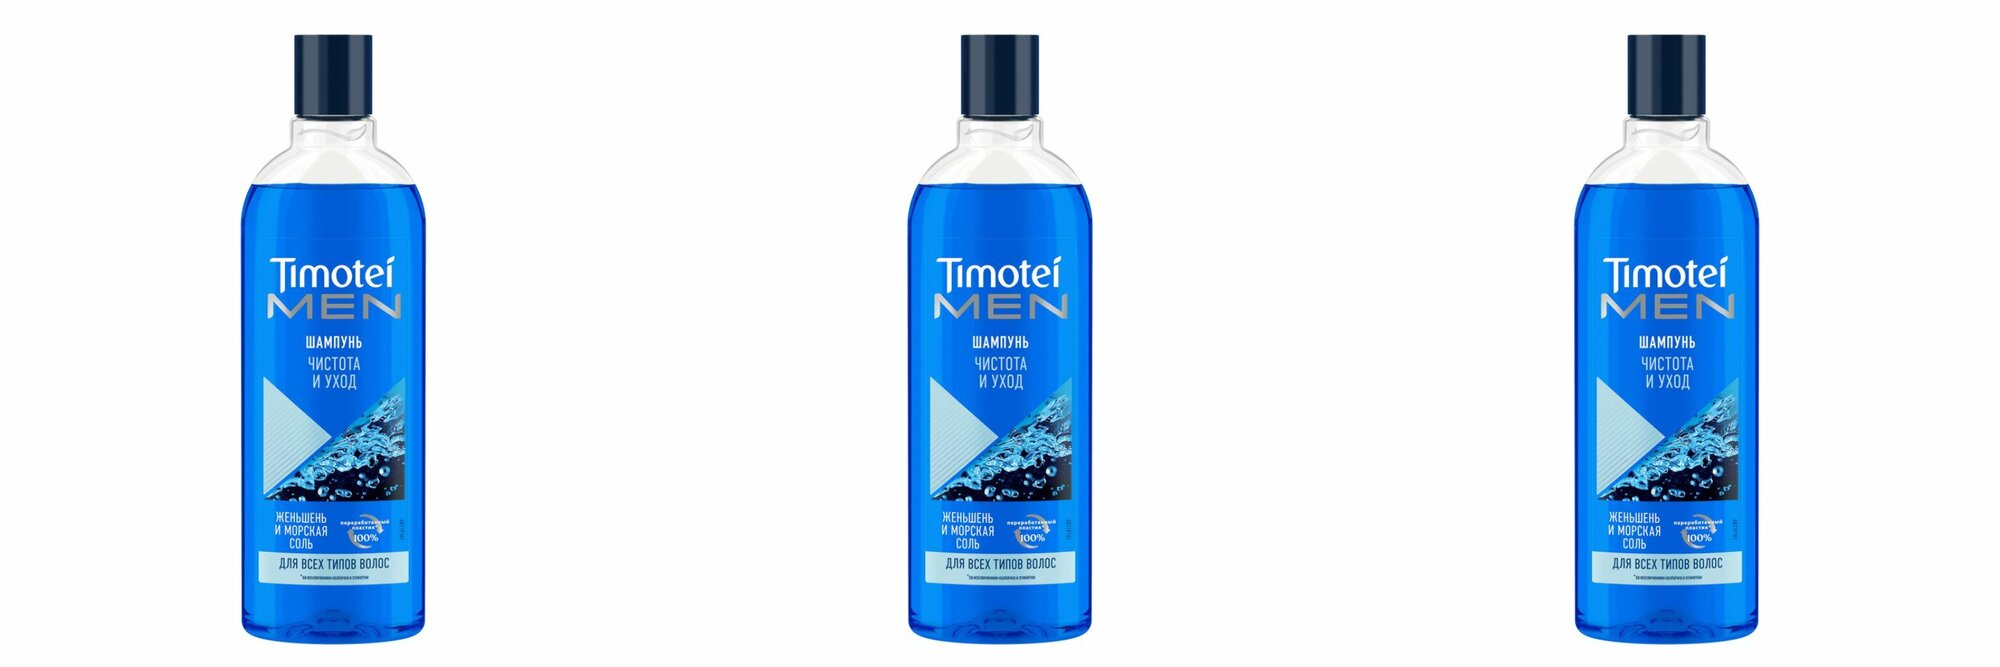 Timotei Шампунь для волос мужской чистота и уход, 400мл, 3 шт.